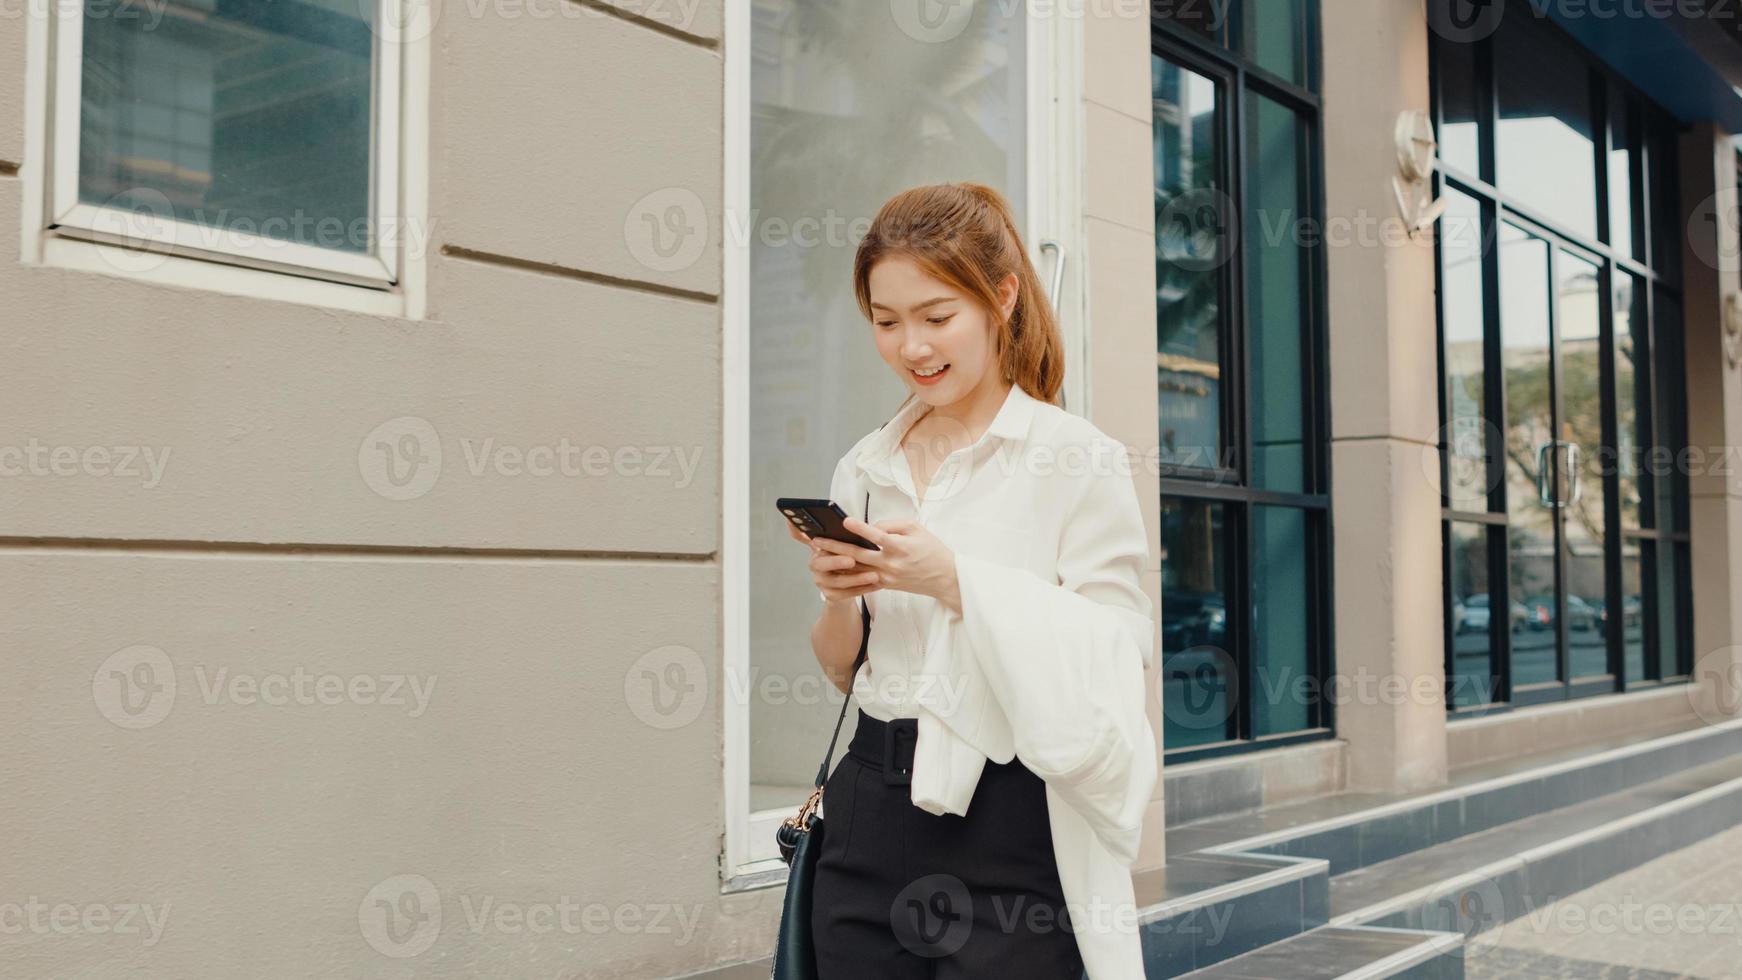 Jeune femme d'affaires asiatique réussie dans des vêtements de bureau de mode utilisant un téléphone intelligent et tapant un message texte tout en marchant seule à l'extérieur dans une ville urbaine moderne le matin. concept d'entreprise en déplacement. photo